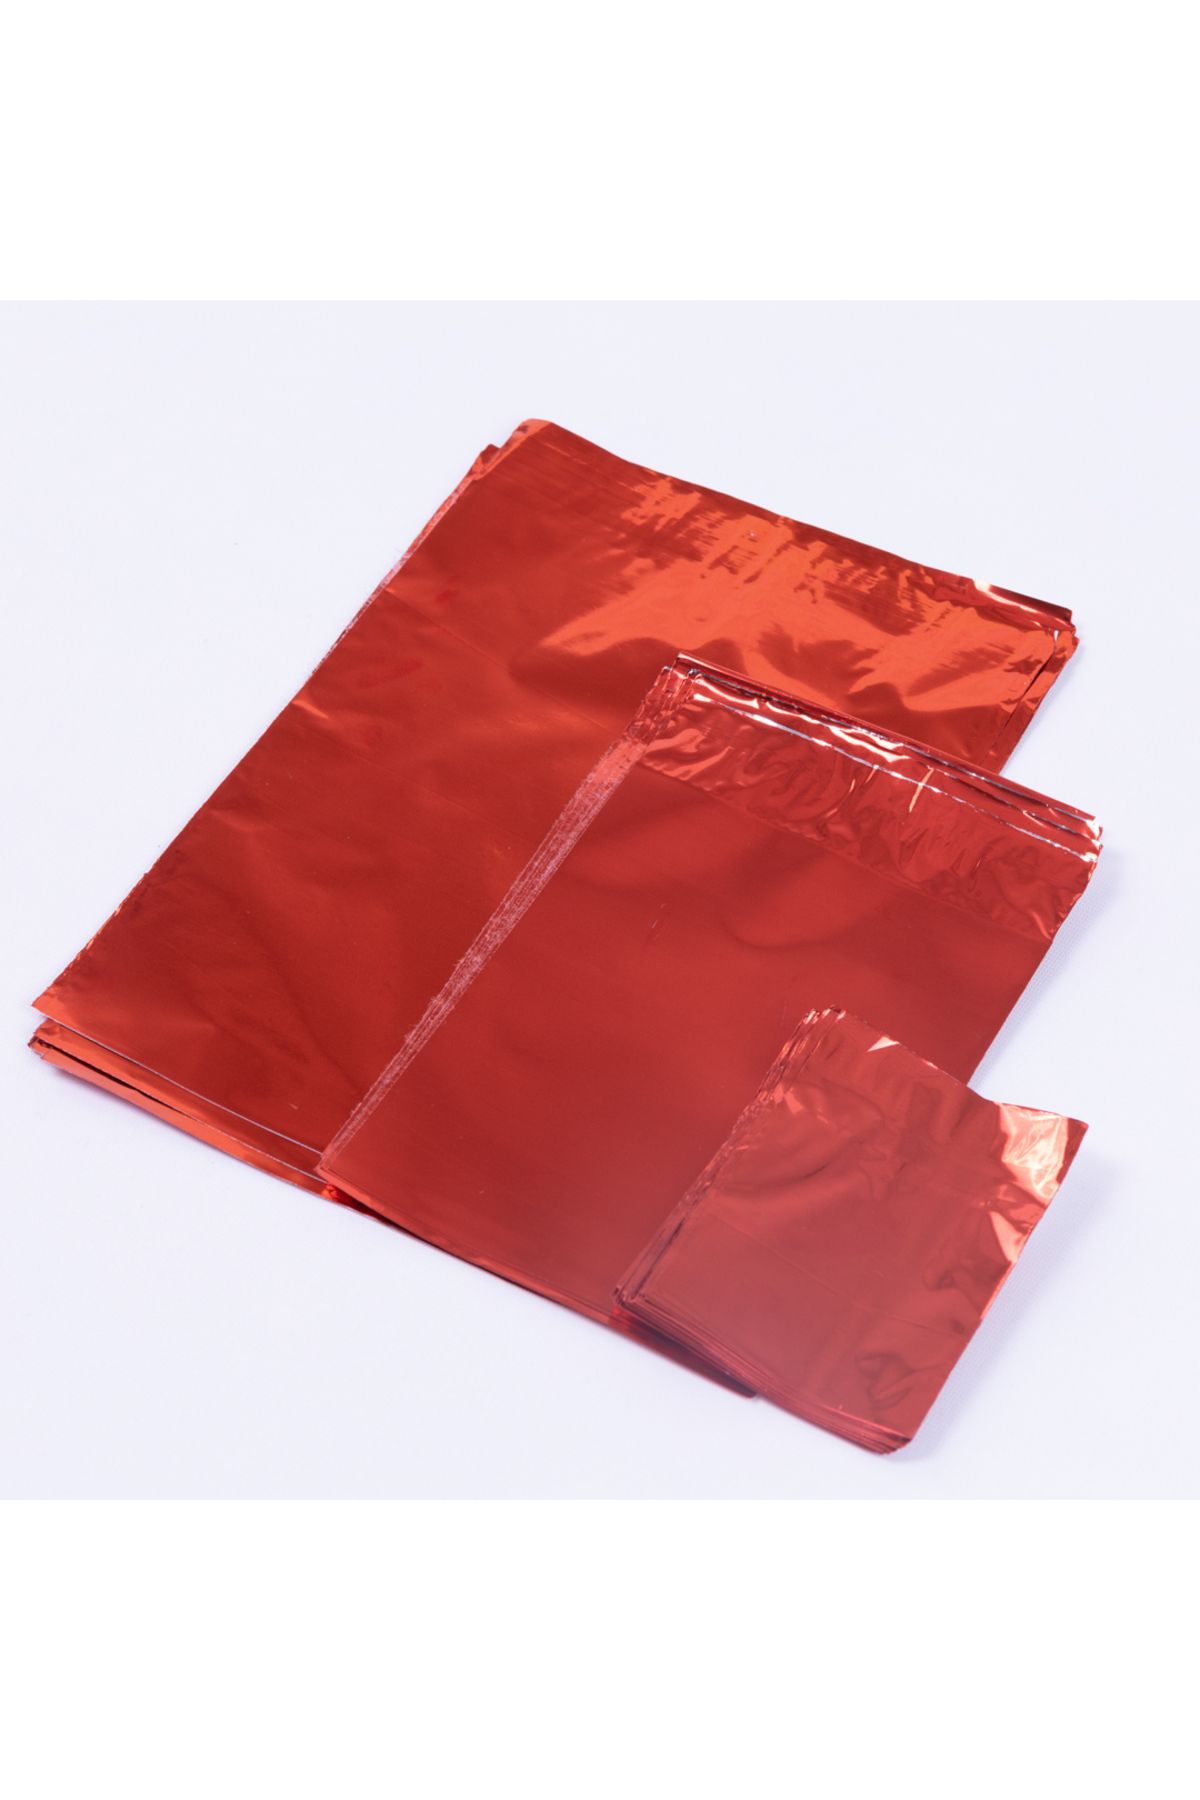 Bimotif Metalik Özellikli Poşet 50li, Kırmızı 35x50 Cm (1 ADET)